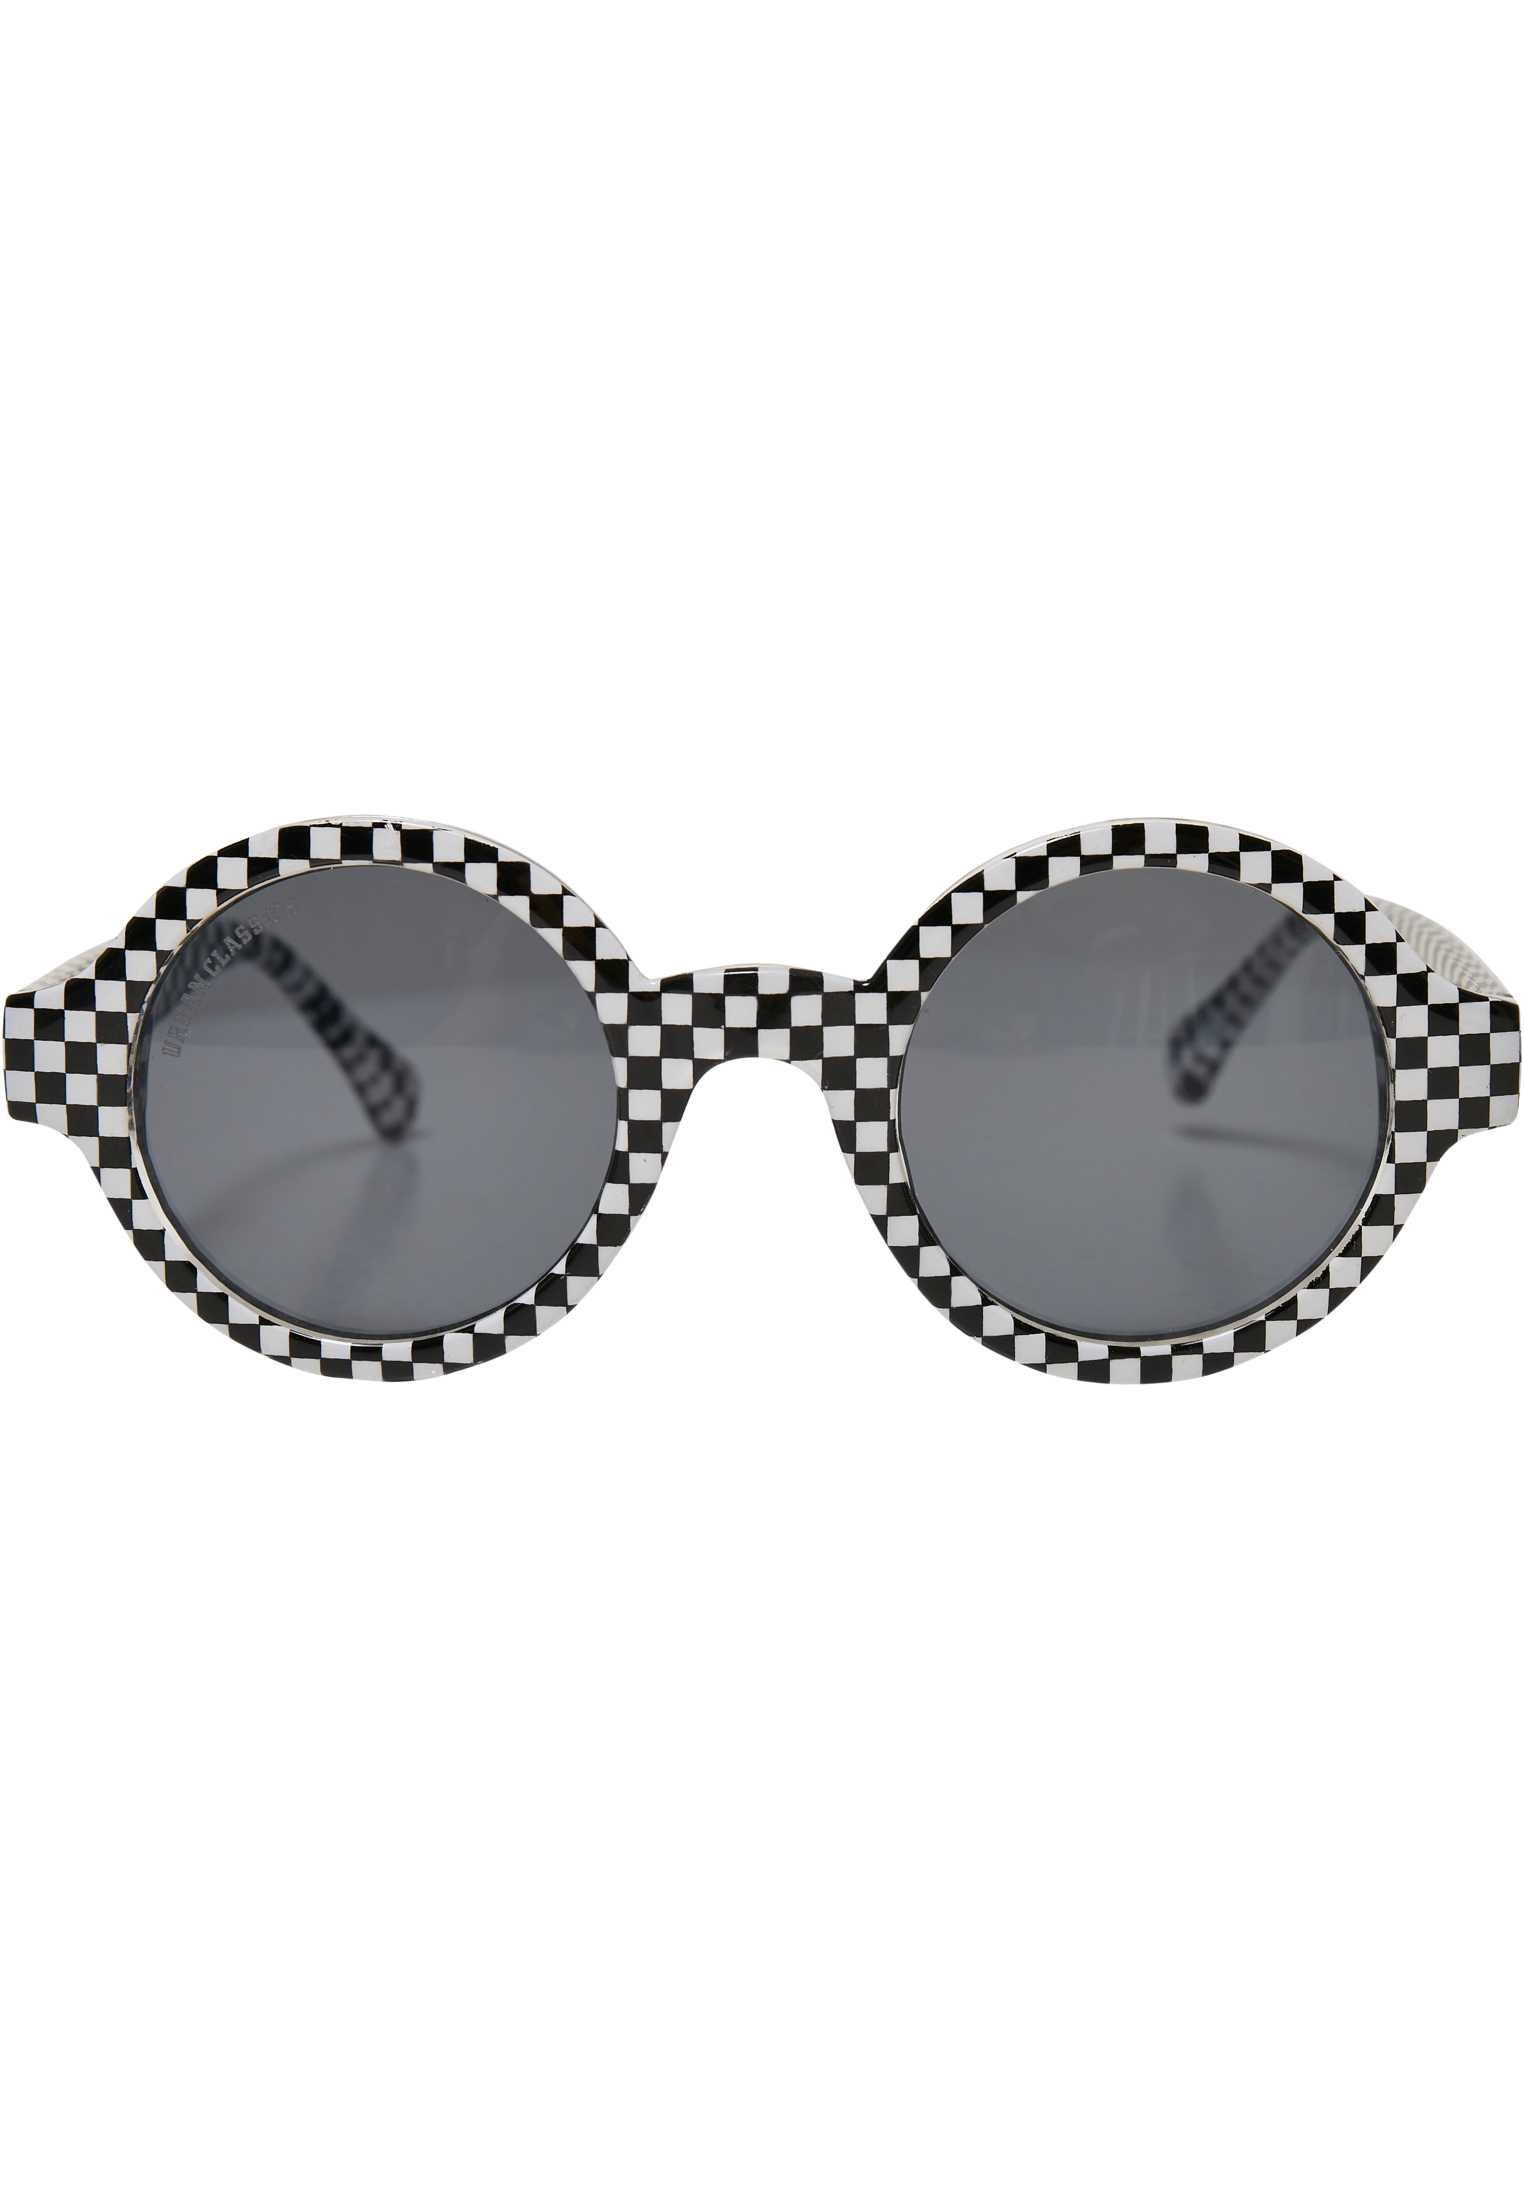 Accessoires Sunglasses Retro Funk UC in Farbe black/white